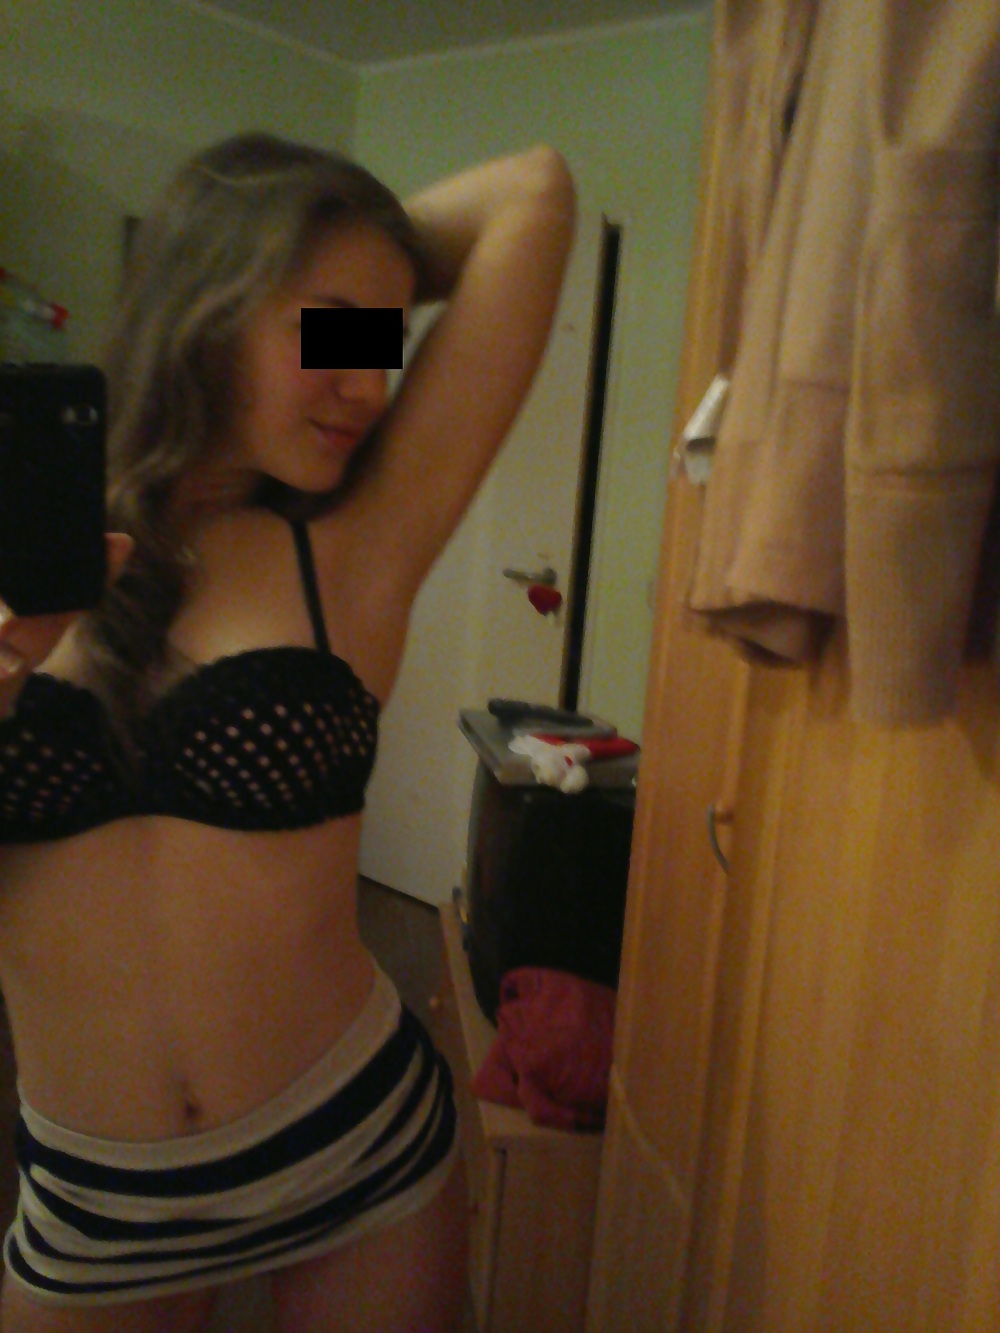 Exposed 18yo Girlfriend - Amateur German Private Nude 2 #22106521